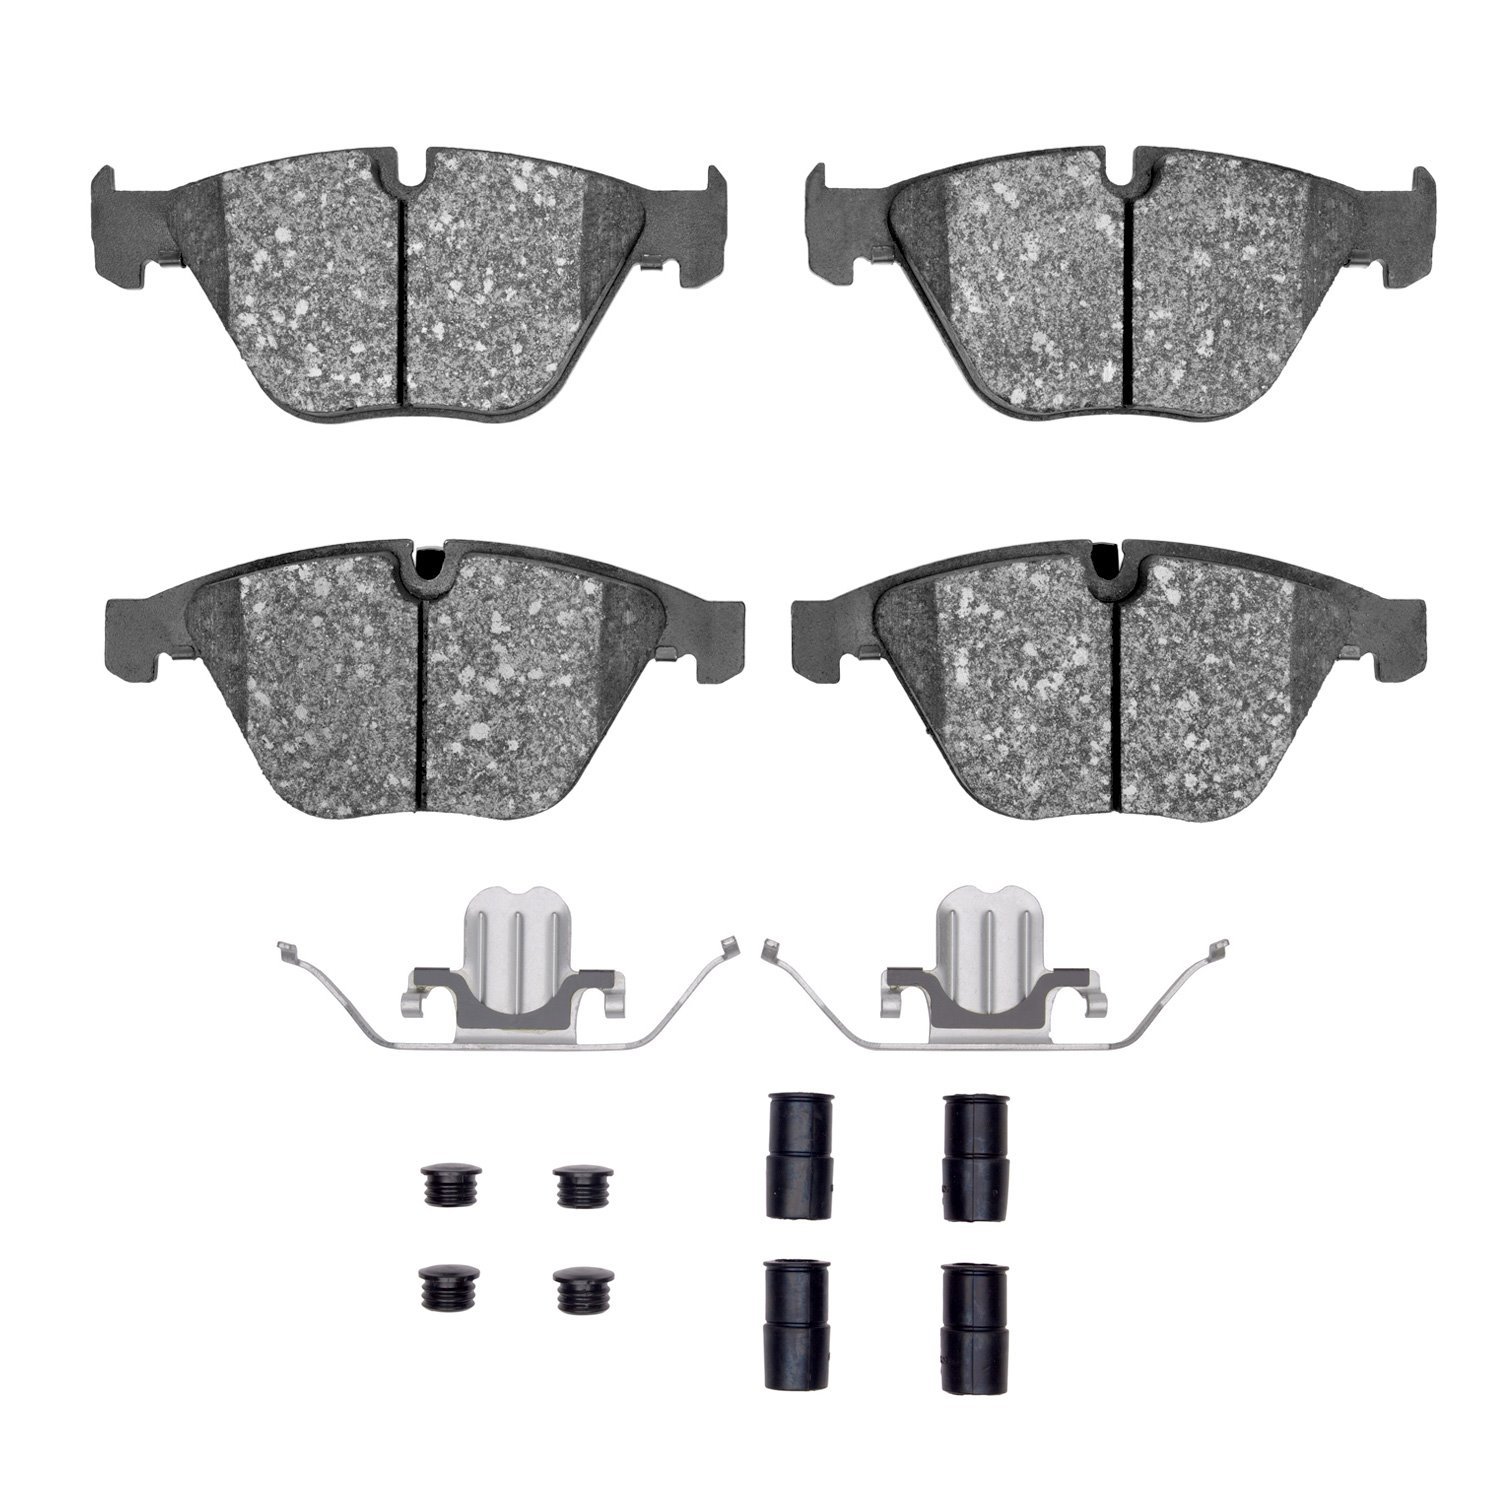 1311-1260-01 3000-Series Semi-Metallic Brake Pads & Hardware Kit, 2007-2015 BMW, Position: Front